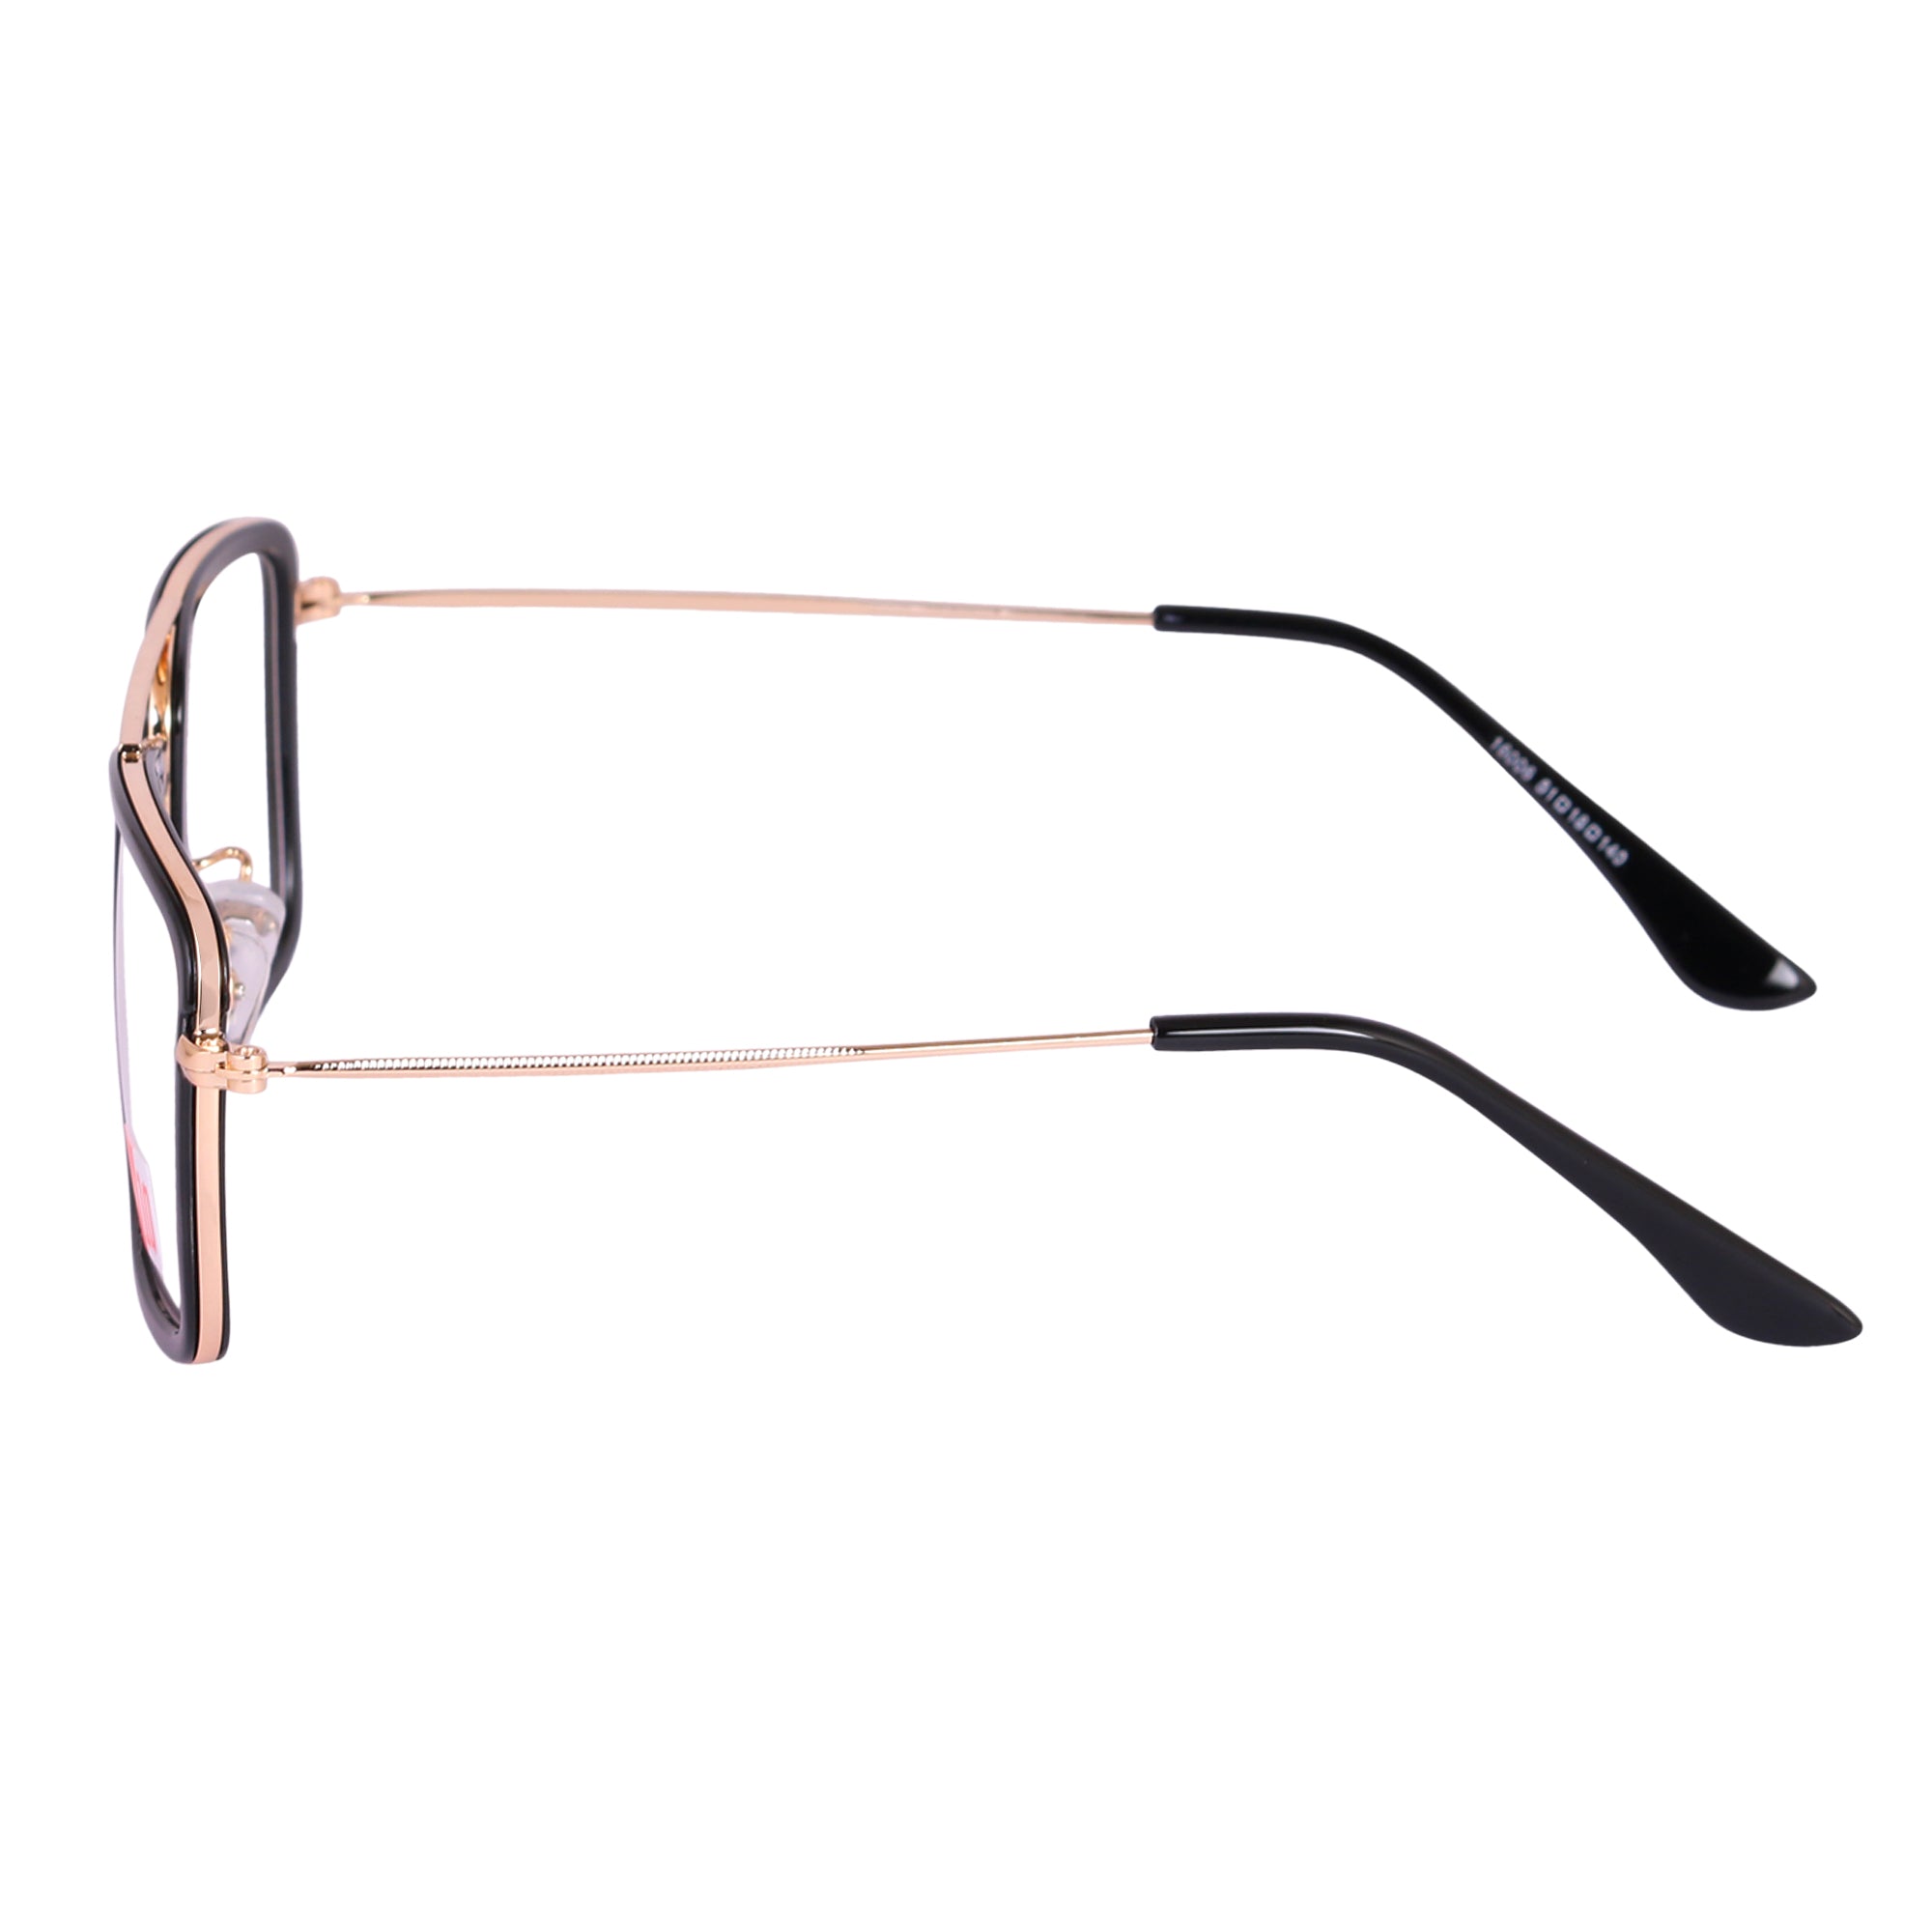 BLACK GOLD Square Rimmed Eyeglasses -16006